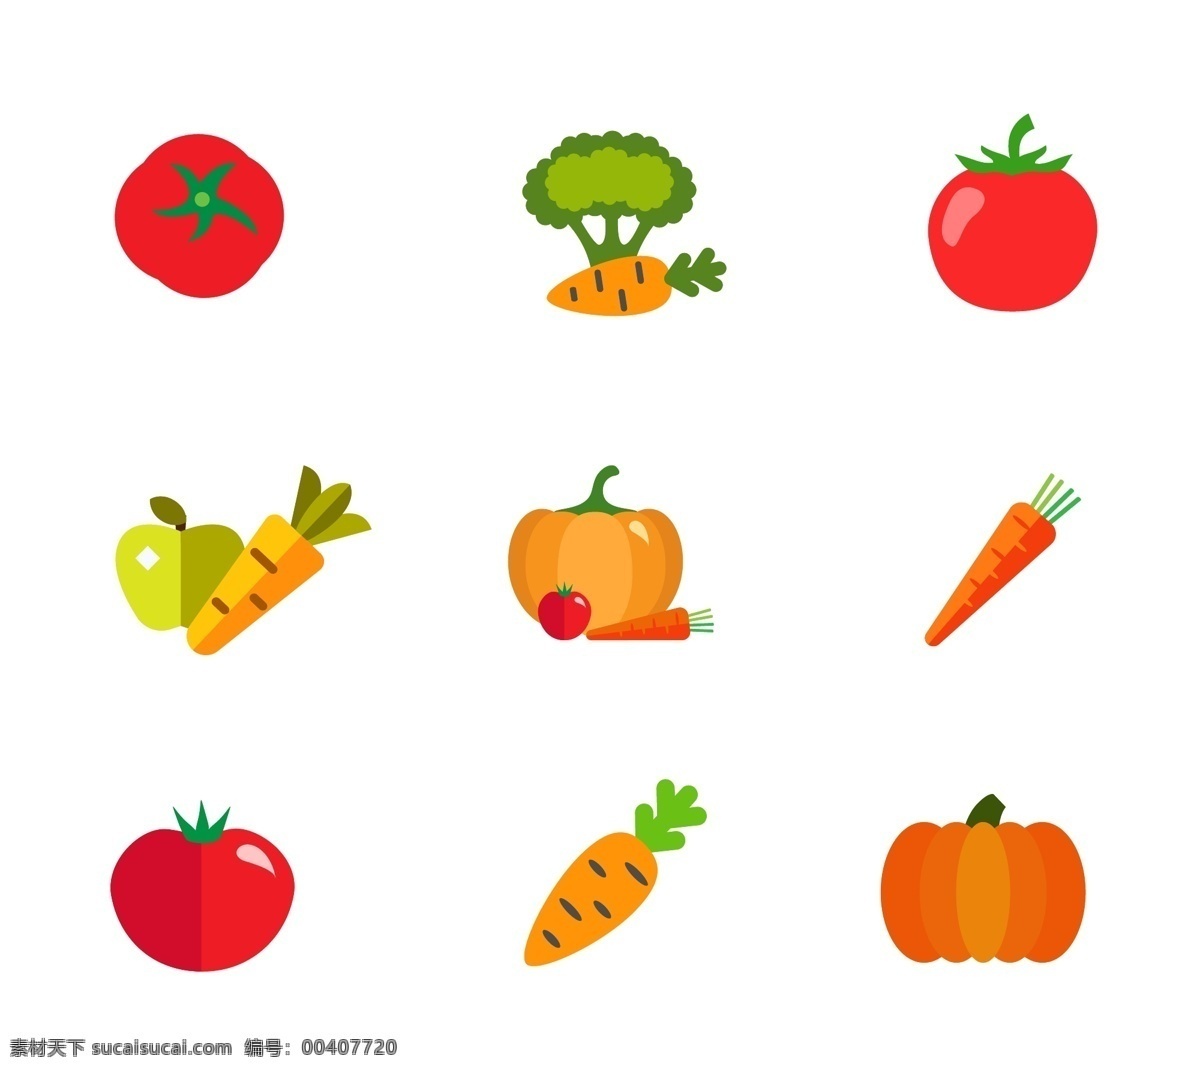 杂货店 图标 集 食品 标签 红色 布局 秋天 橙色 苹果 平板 植物 生态 绘画 有机 甜 健康 蔬菜 团体 南瓜 食品图标 健康食品